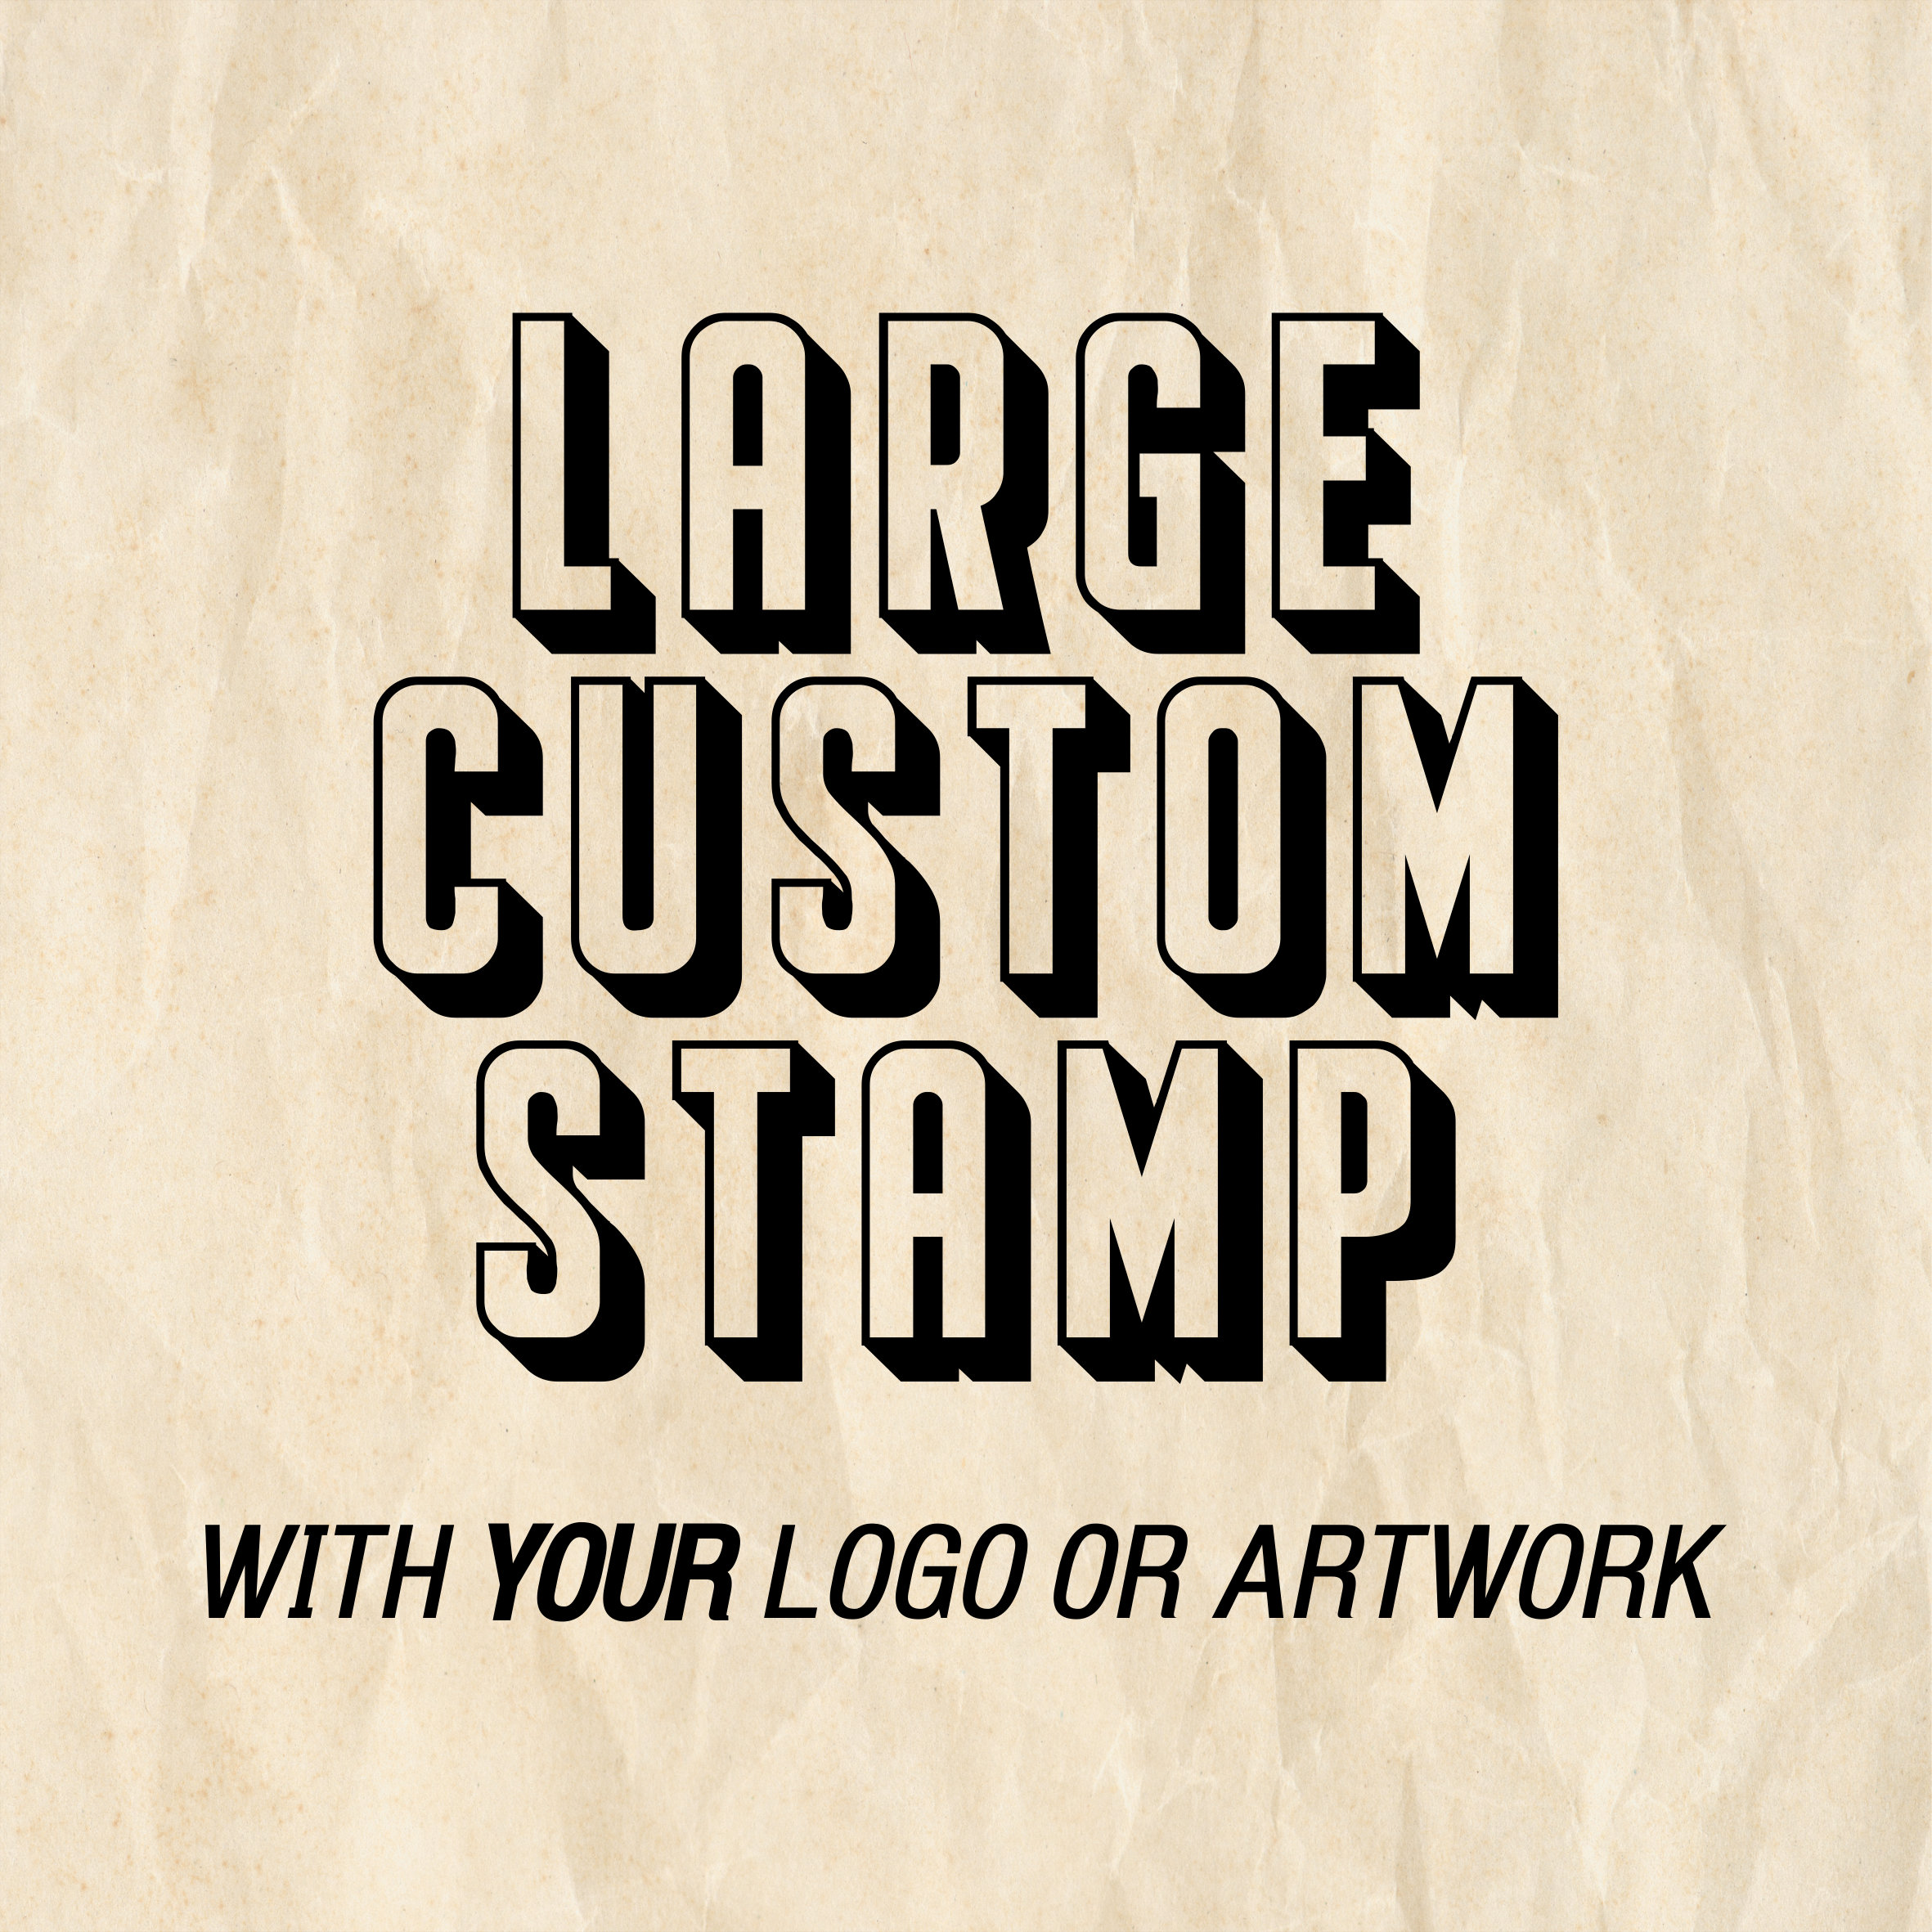 Custom Brand Stamp for Custom Logo Paper Bag, Custom Logo Boxes, Large  Custom Artwork Stamp, Wooden Business Logo Stamp, Logo Shopping Bags 